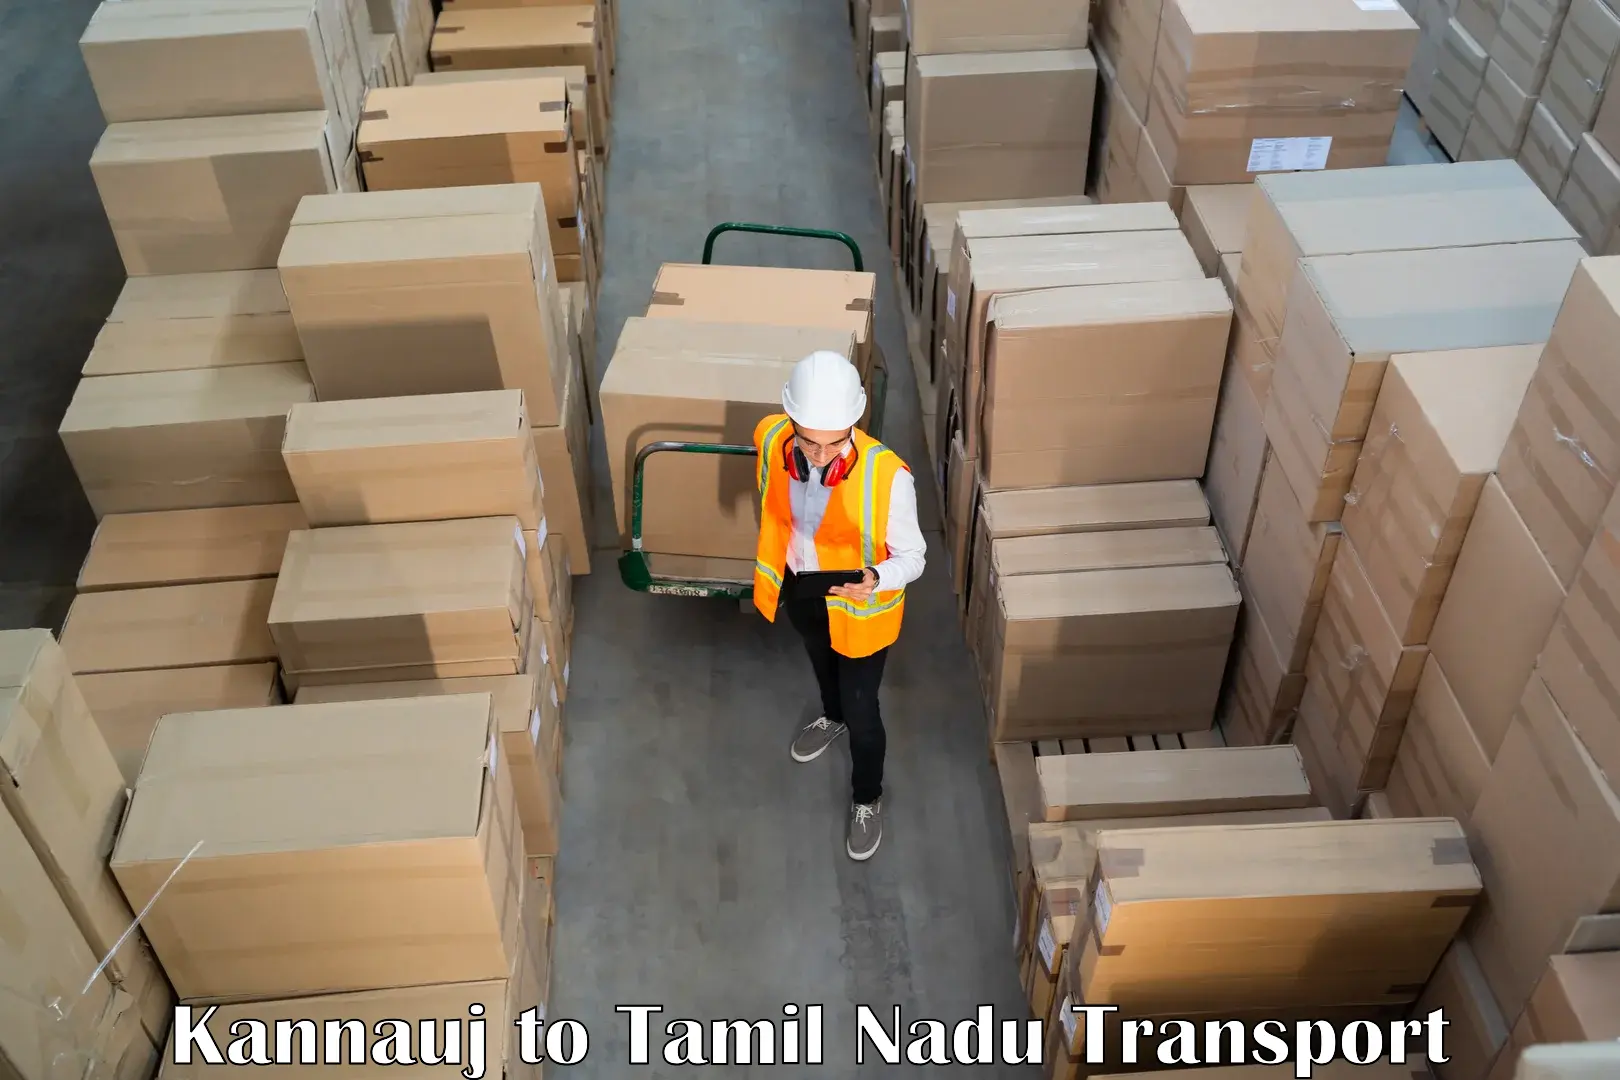 Cargo transportation services Kannauj to Panruti